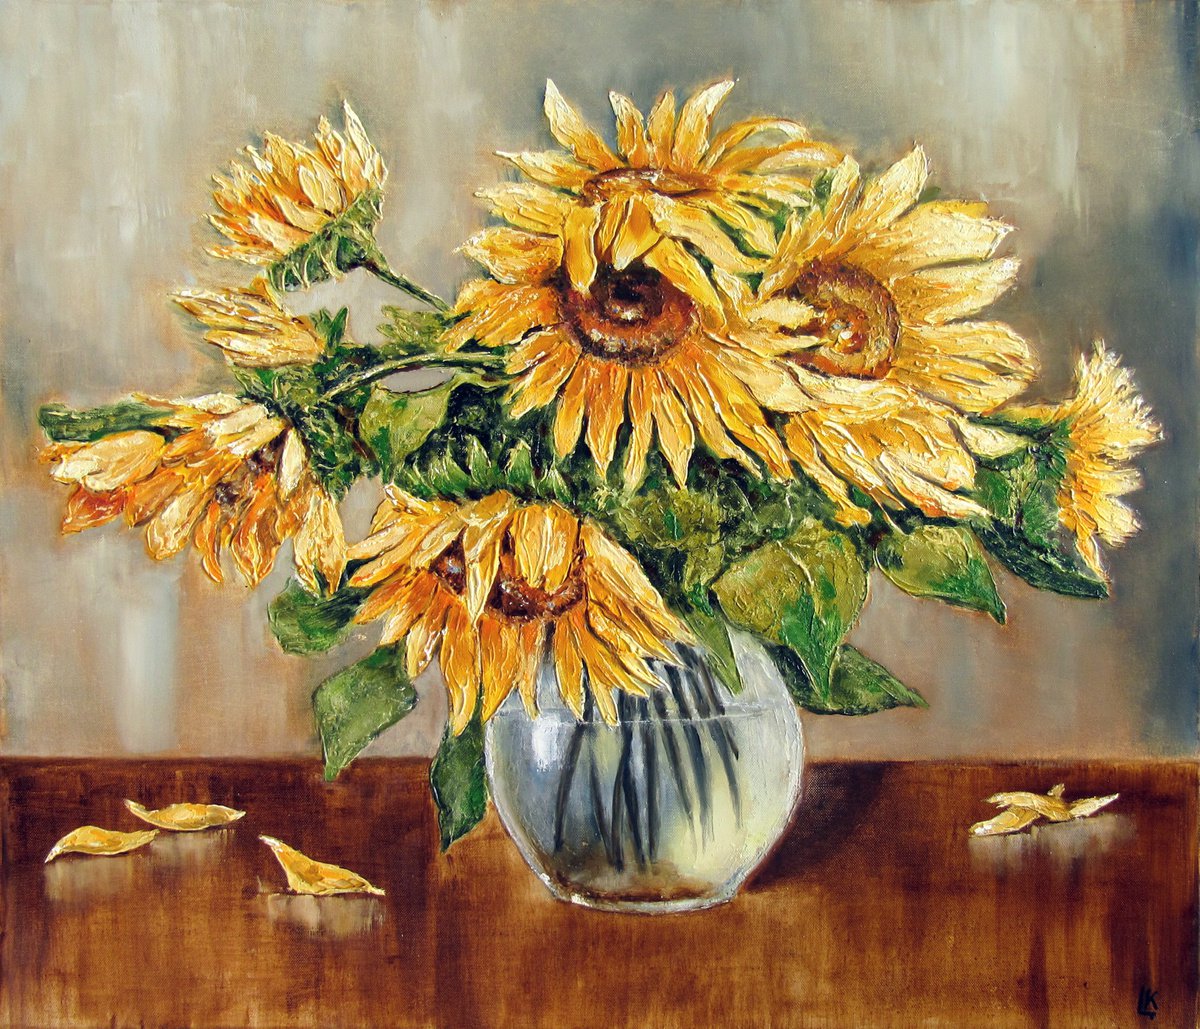 Sunflowers in a vase by Ludmila Kovalenko